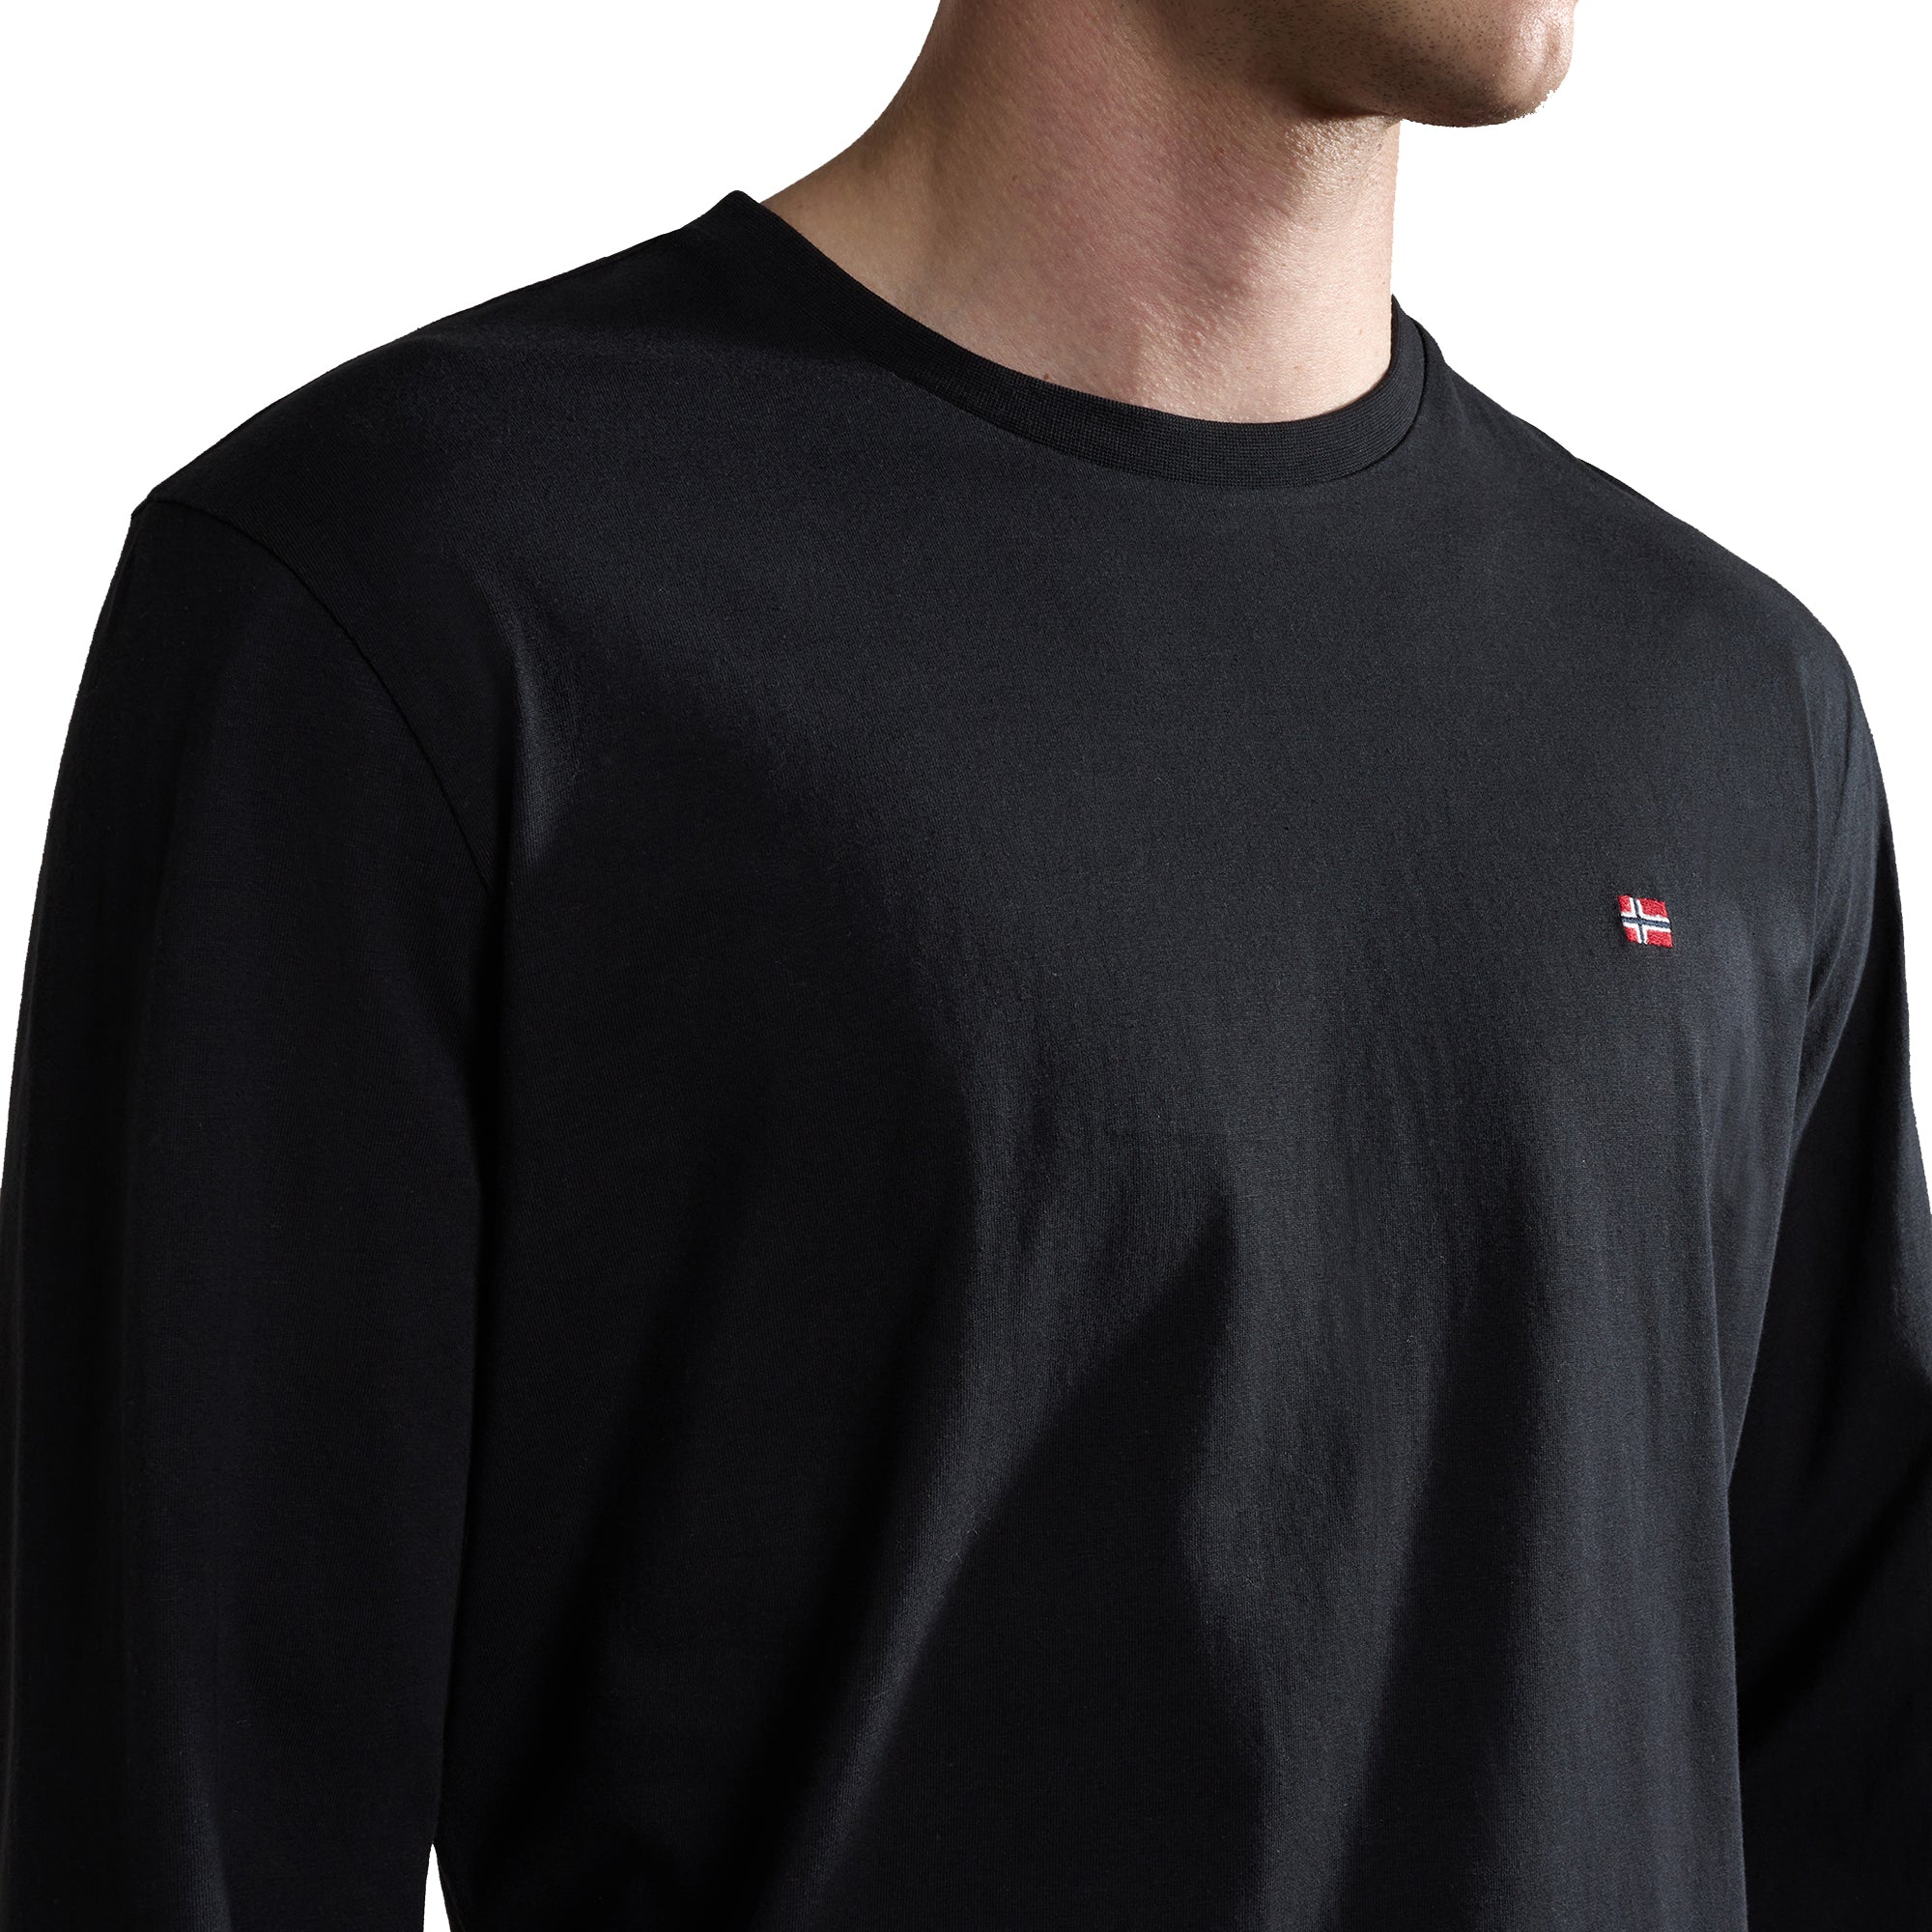 Napapijri Salis Long Sleeve T-Shirt - Black